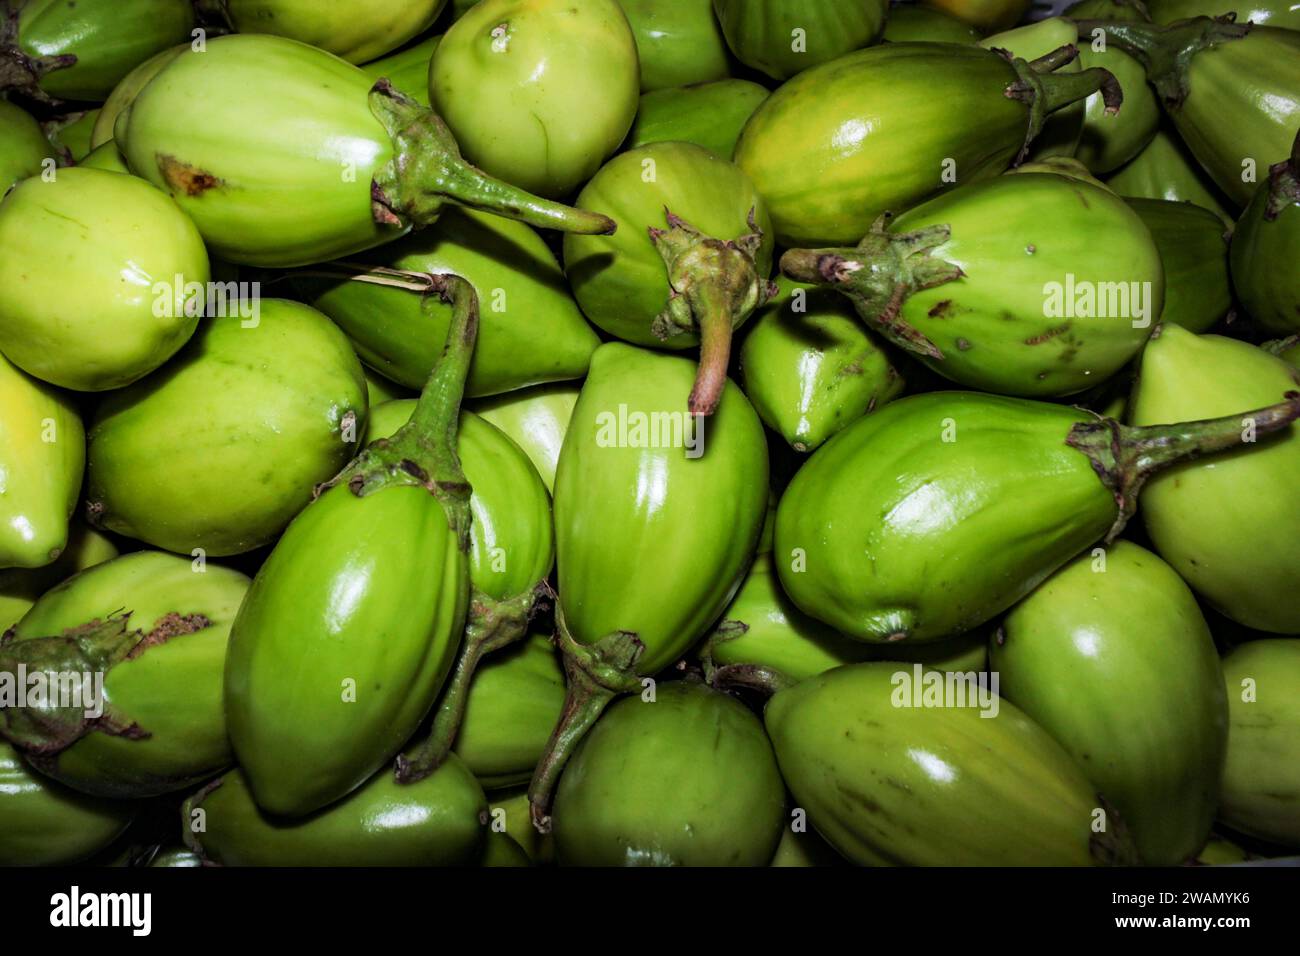 Una porción del fruto Jiló, el fruto de sabor amargo de la planta Solanum aethiopicum, el jiloeiro, una planta herbácea, cultivada en Brasil. Foto de stock